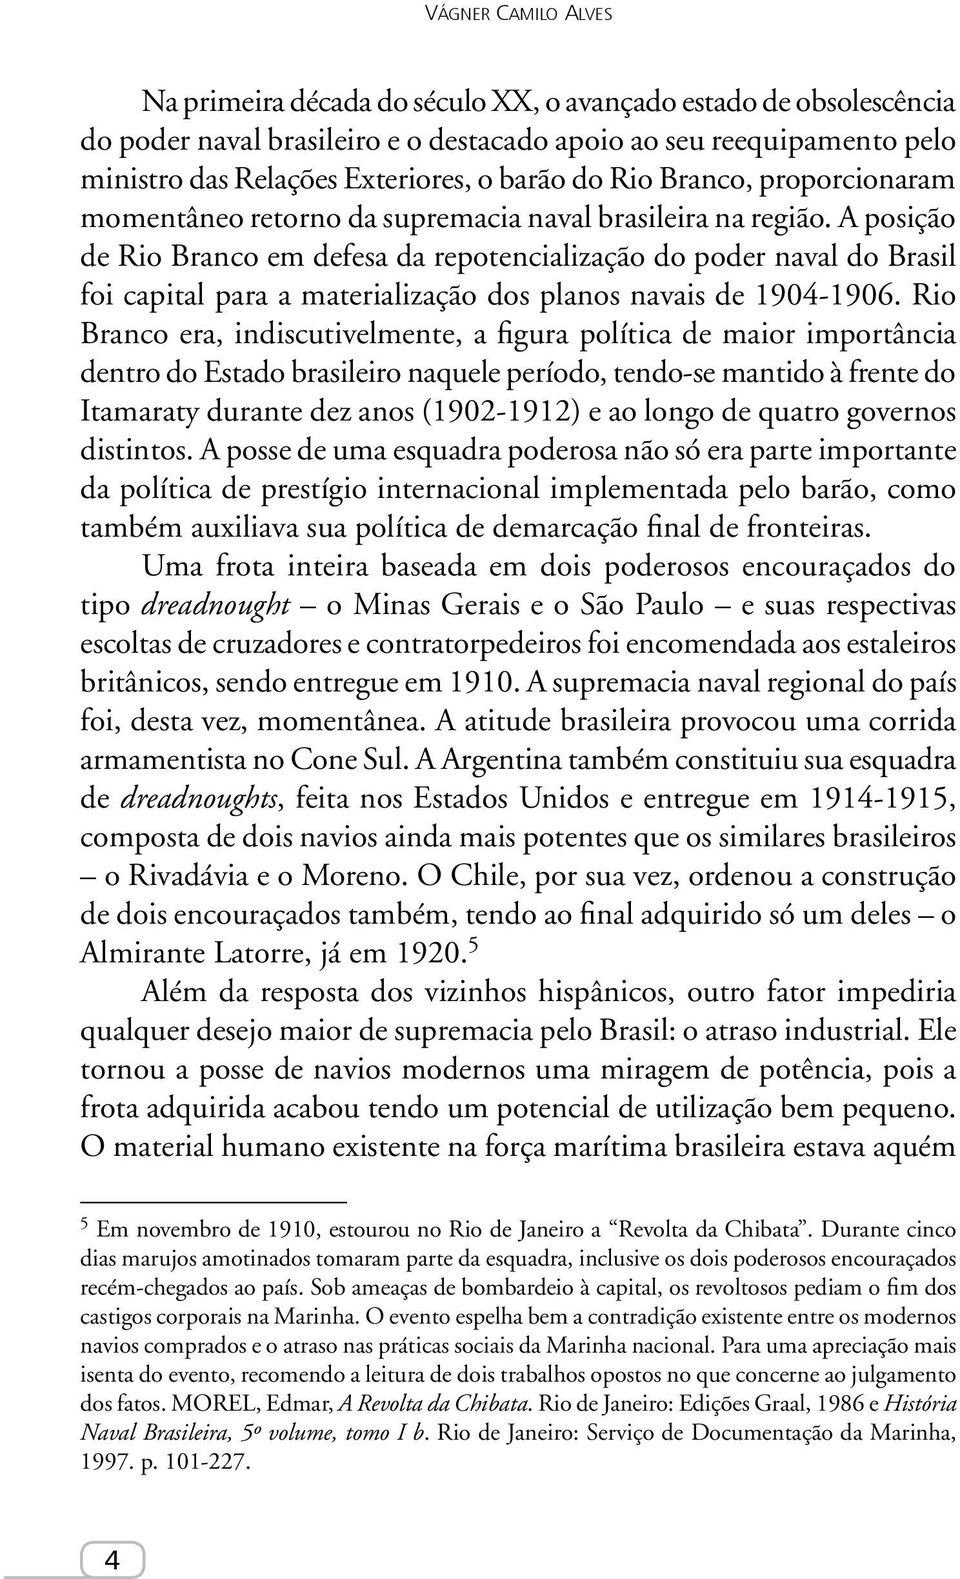 A posição de Rio Branco em defesa da repotencialização do poder naval do Brasil foi capital para a materialização dos planos navais de 1904-1906.